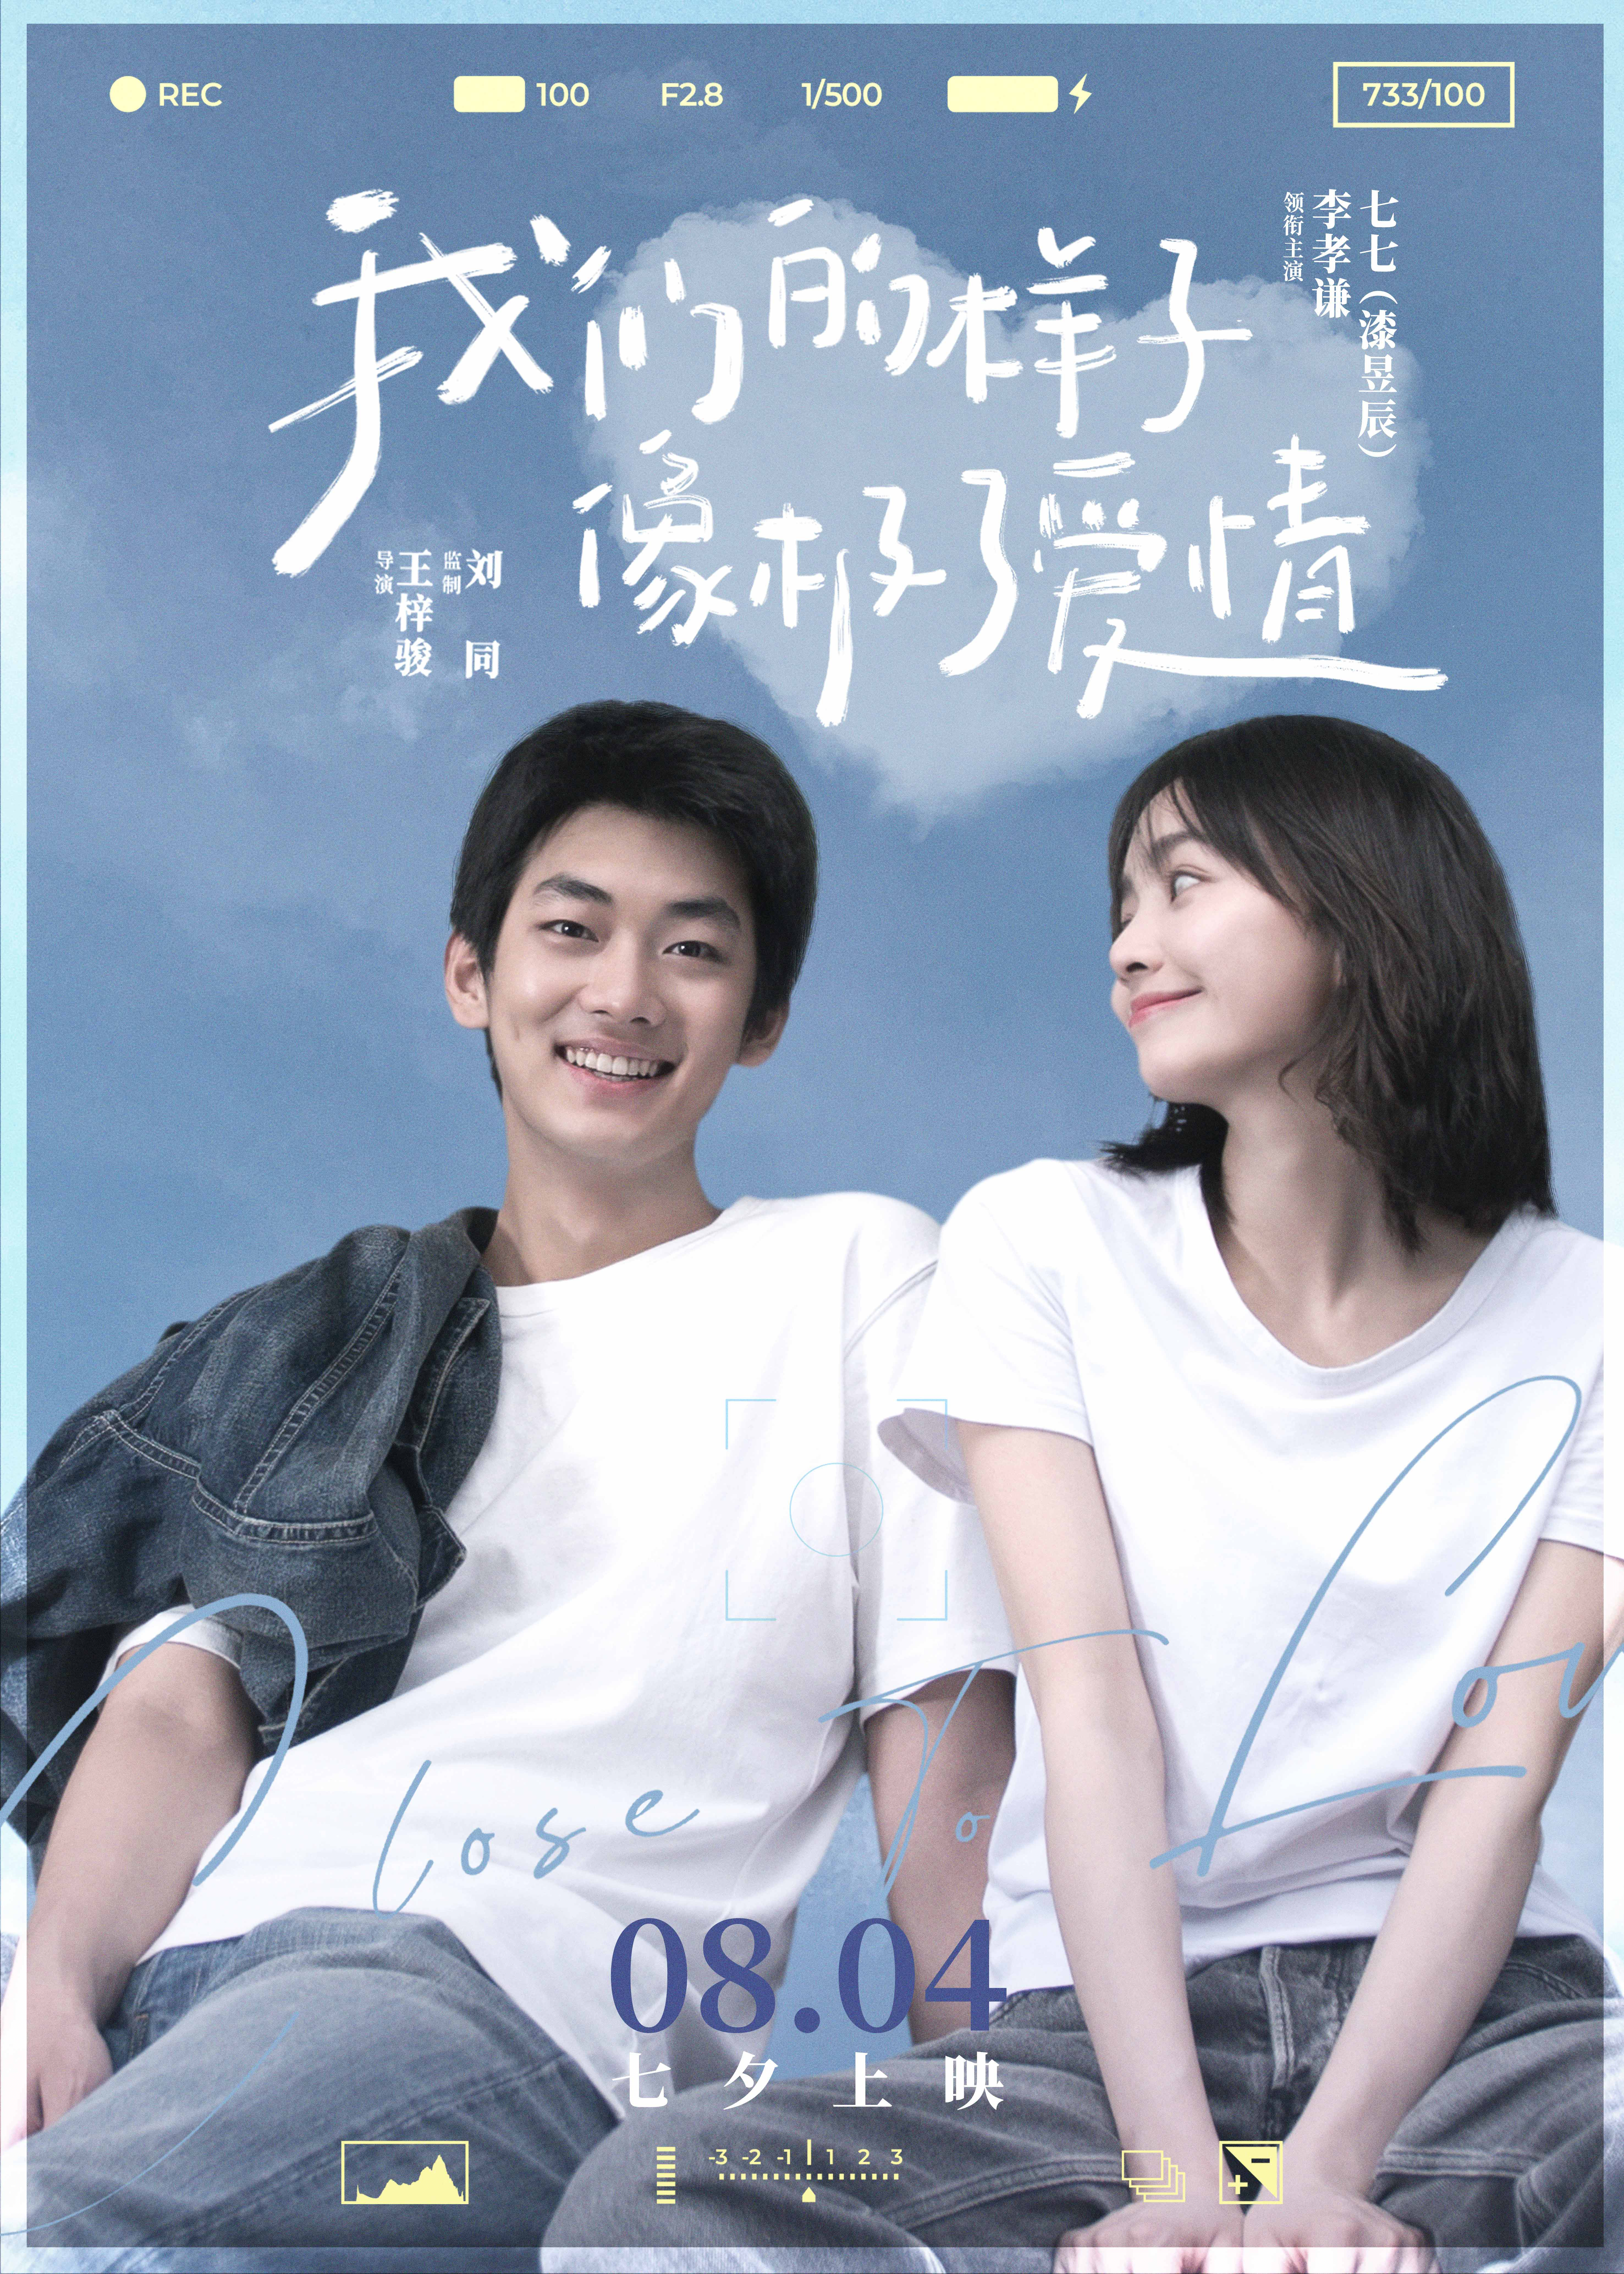 为爱奔赴 我们的样子像极了爱情 曝终极预告 华语 电影网 1905 Com